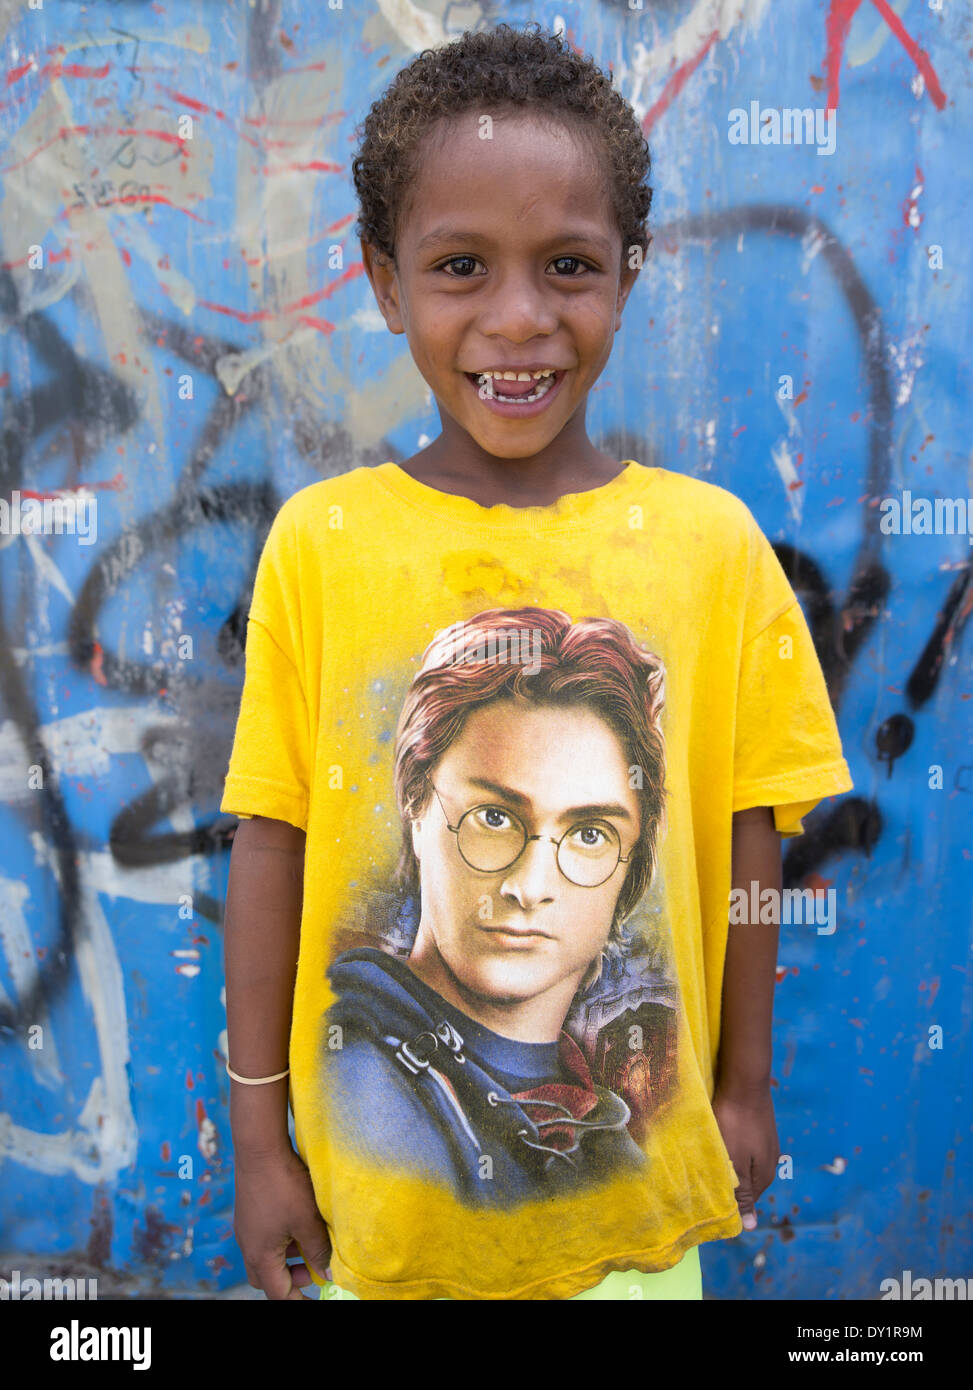 Porträt des jungen mit einem Harry Potter T-shirt von Stelzen Dorf von Koki, Port Moresby, Papua-Neuguinea Stockfoto